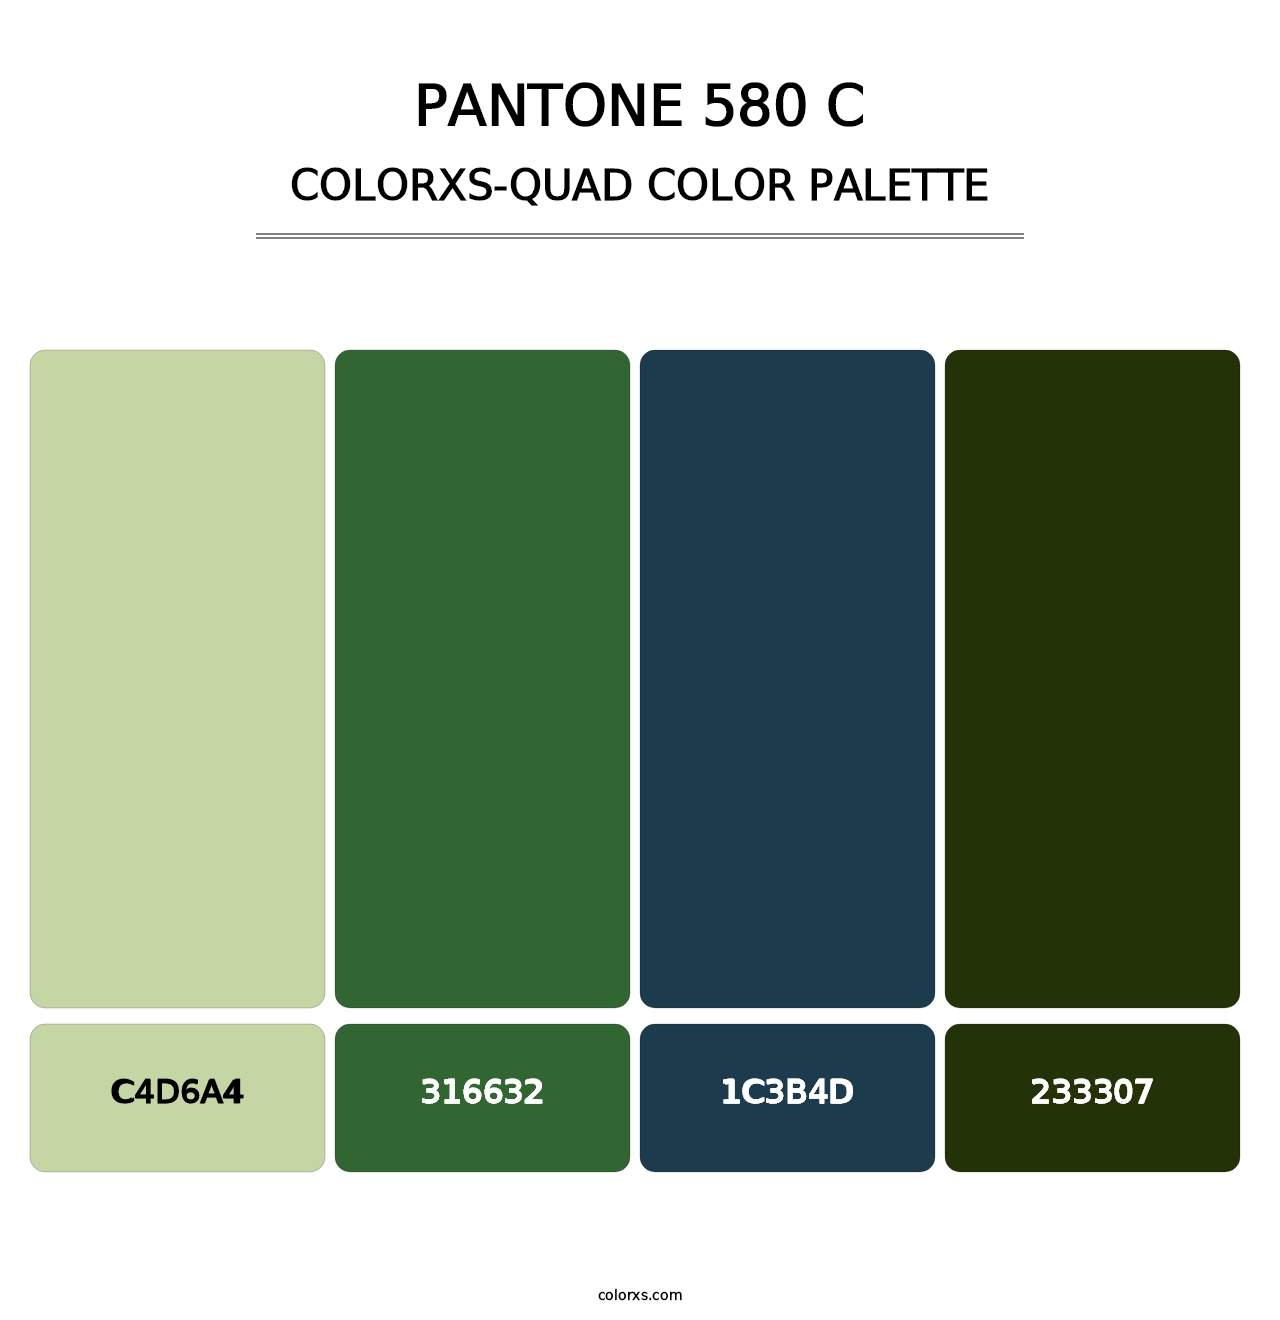 PANTONE 580 C - Colorxs Quad Palette